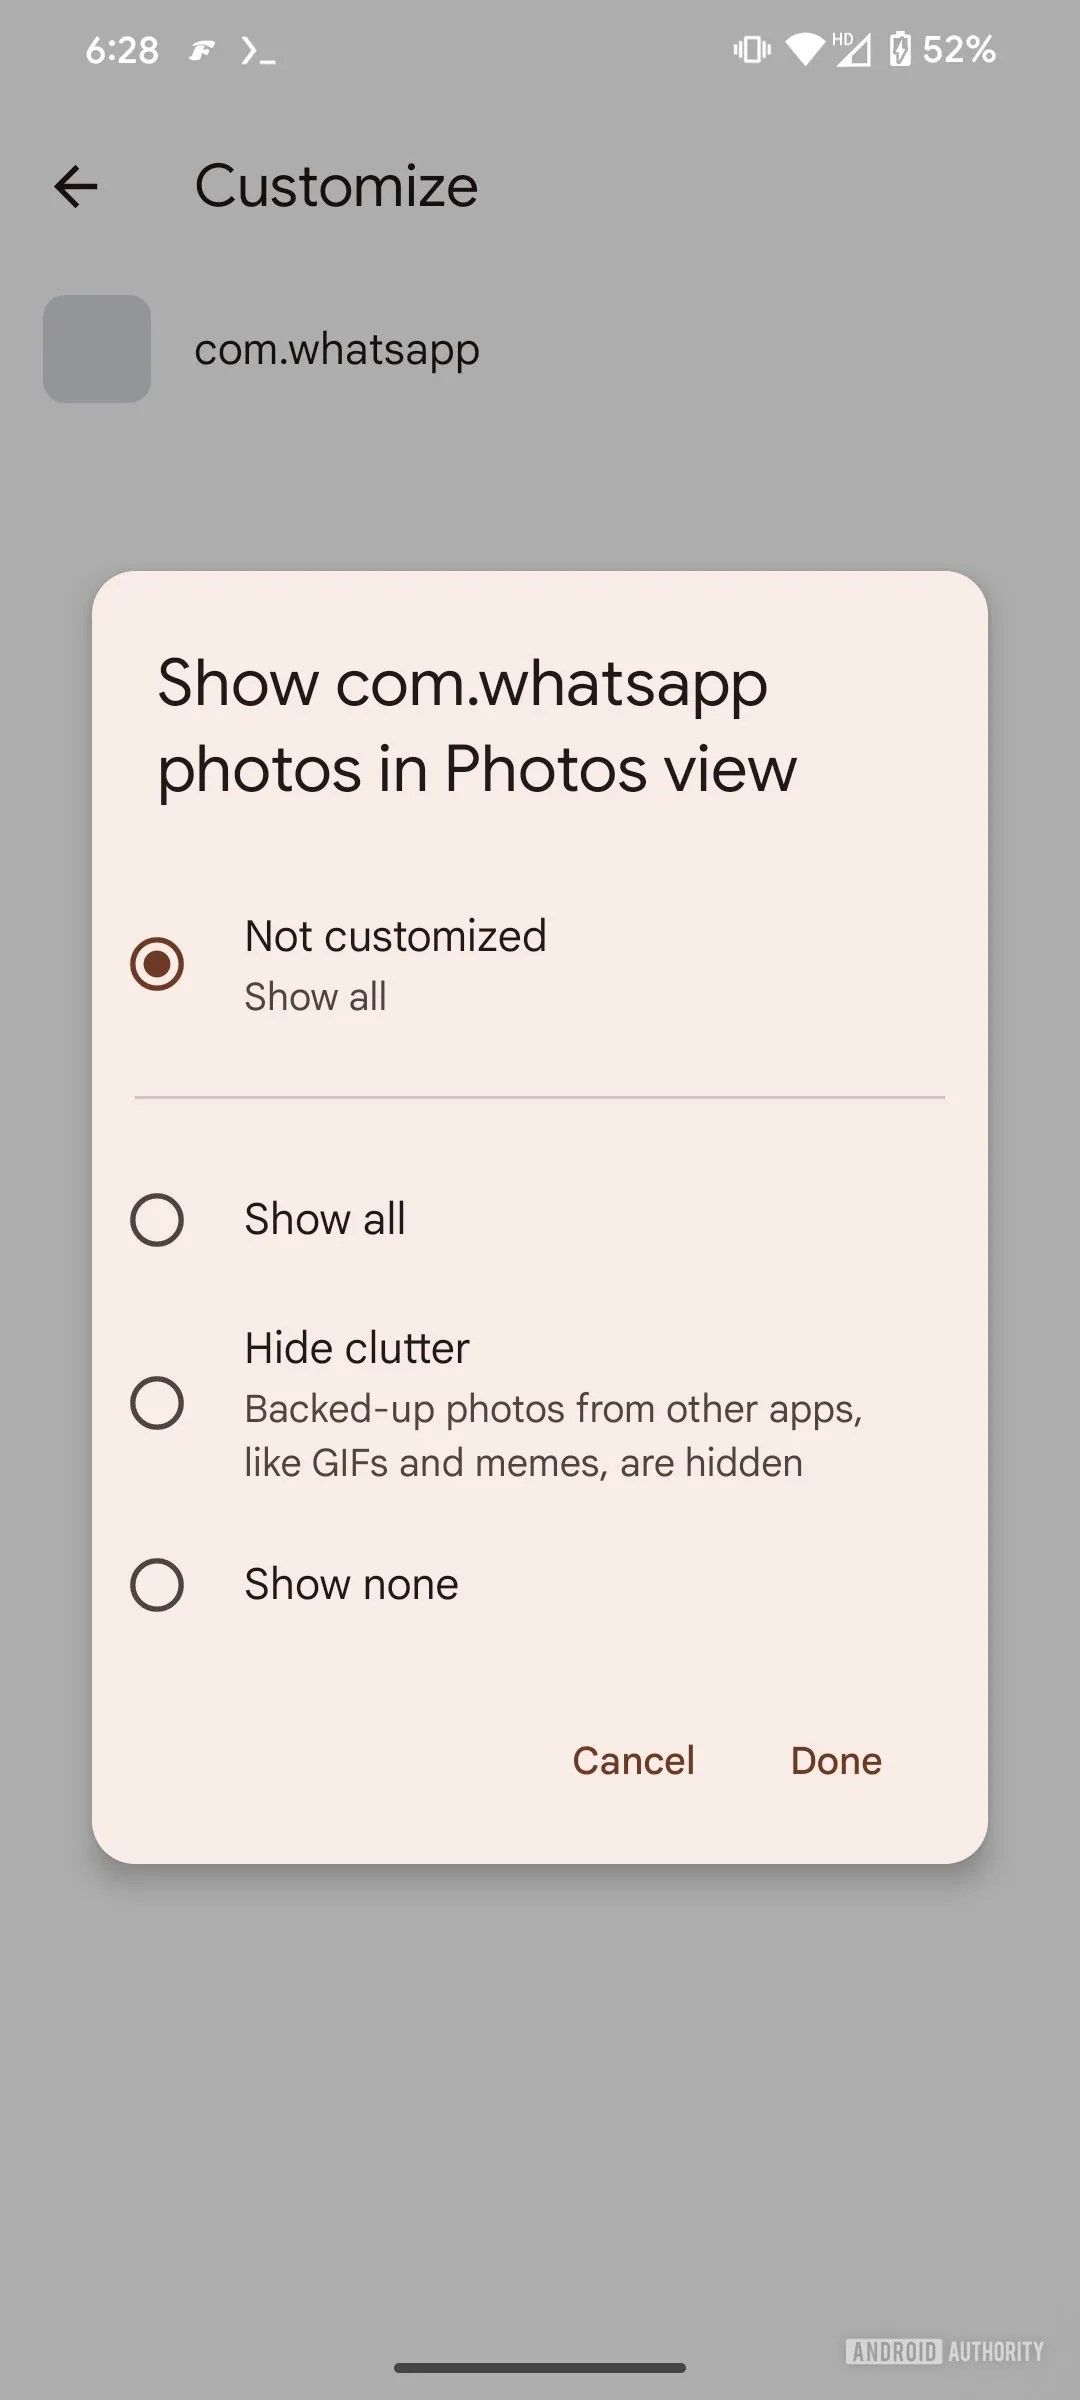 An image of Google Photos setting customization